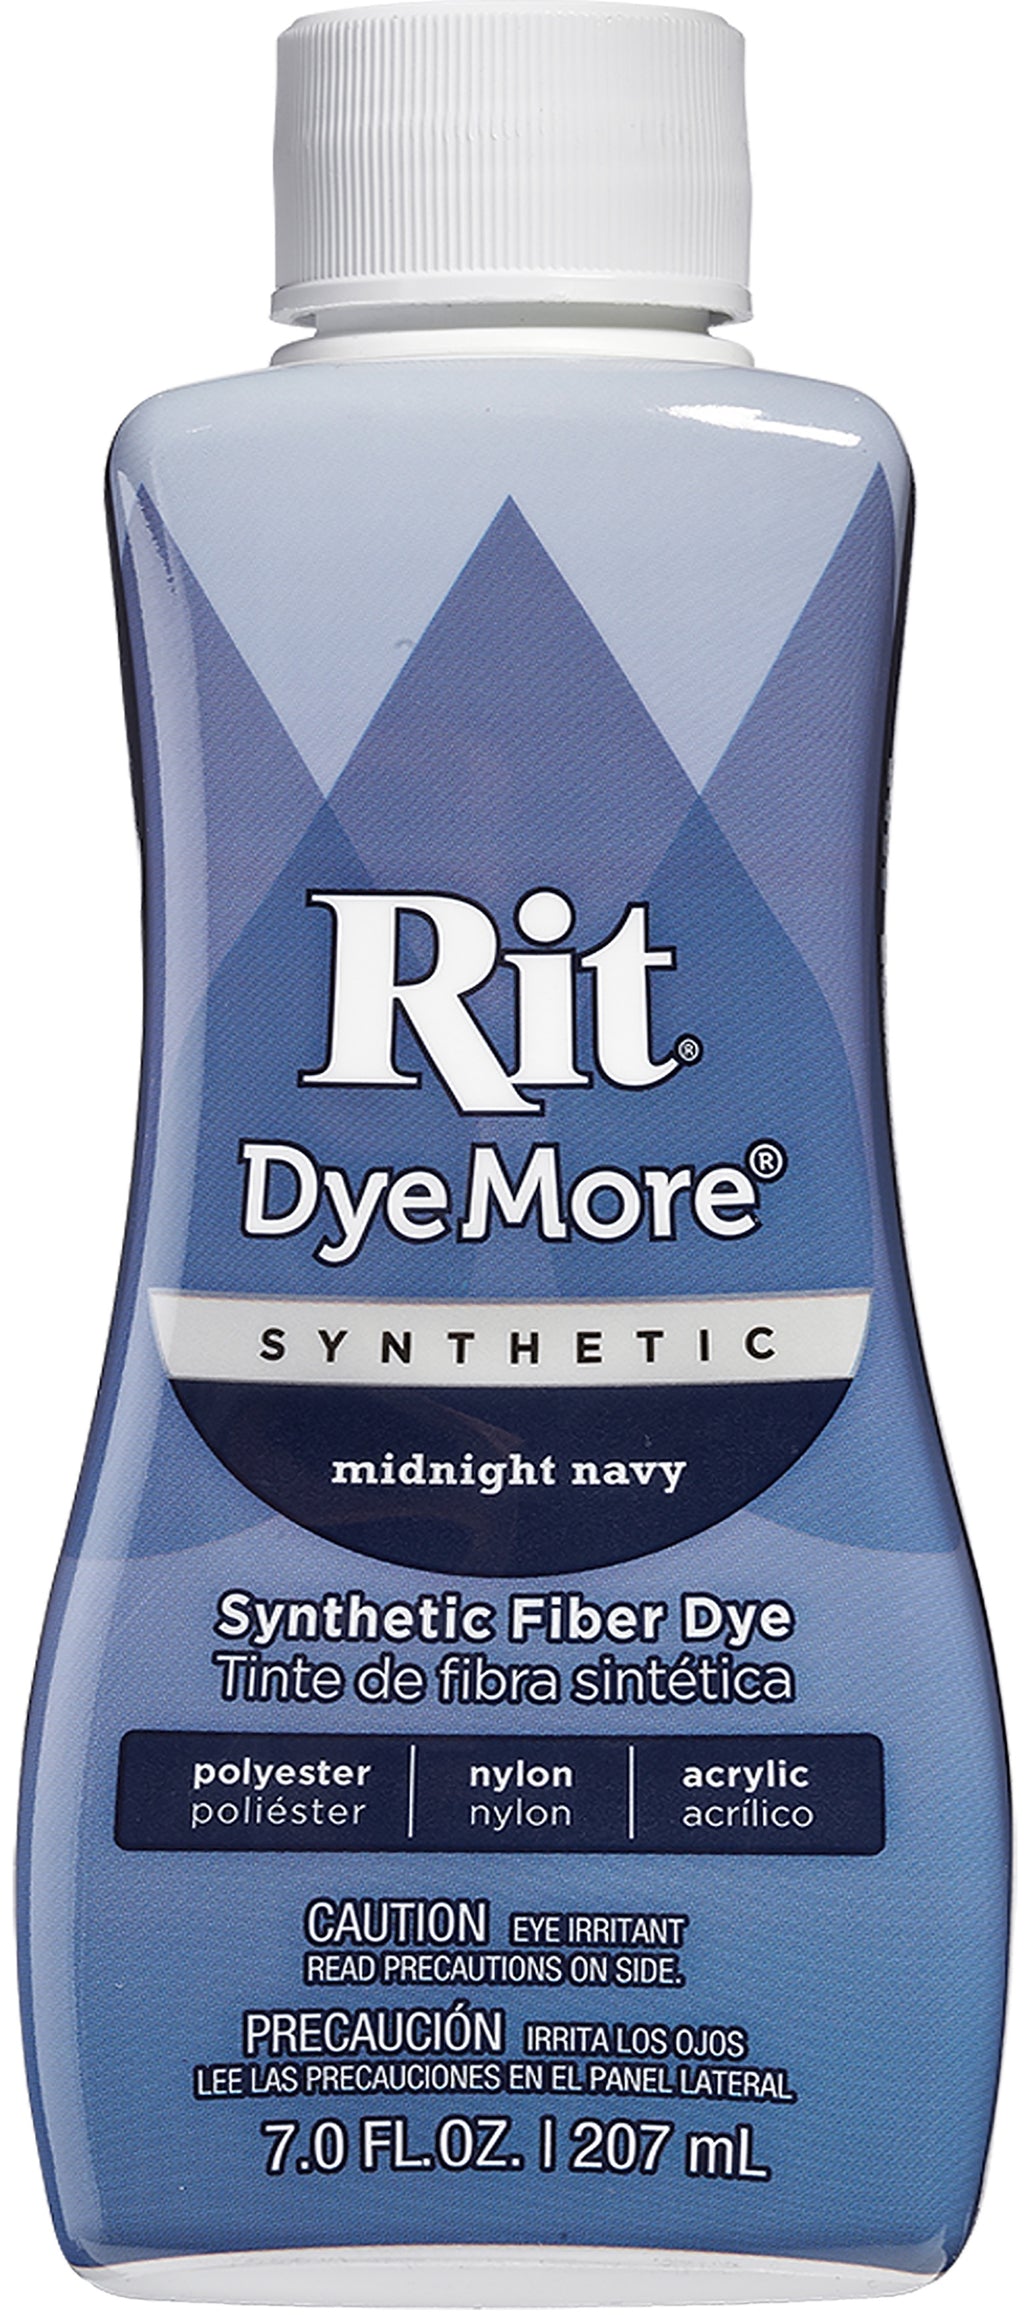 Rit DyeMore Synthetic Fiber Dye - Smoky Blue, 7 oz